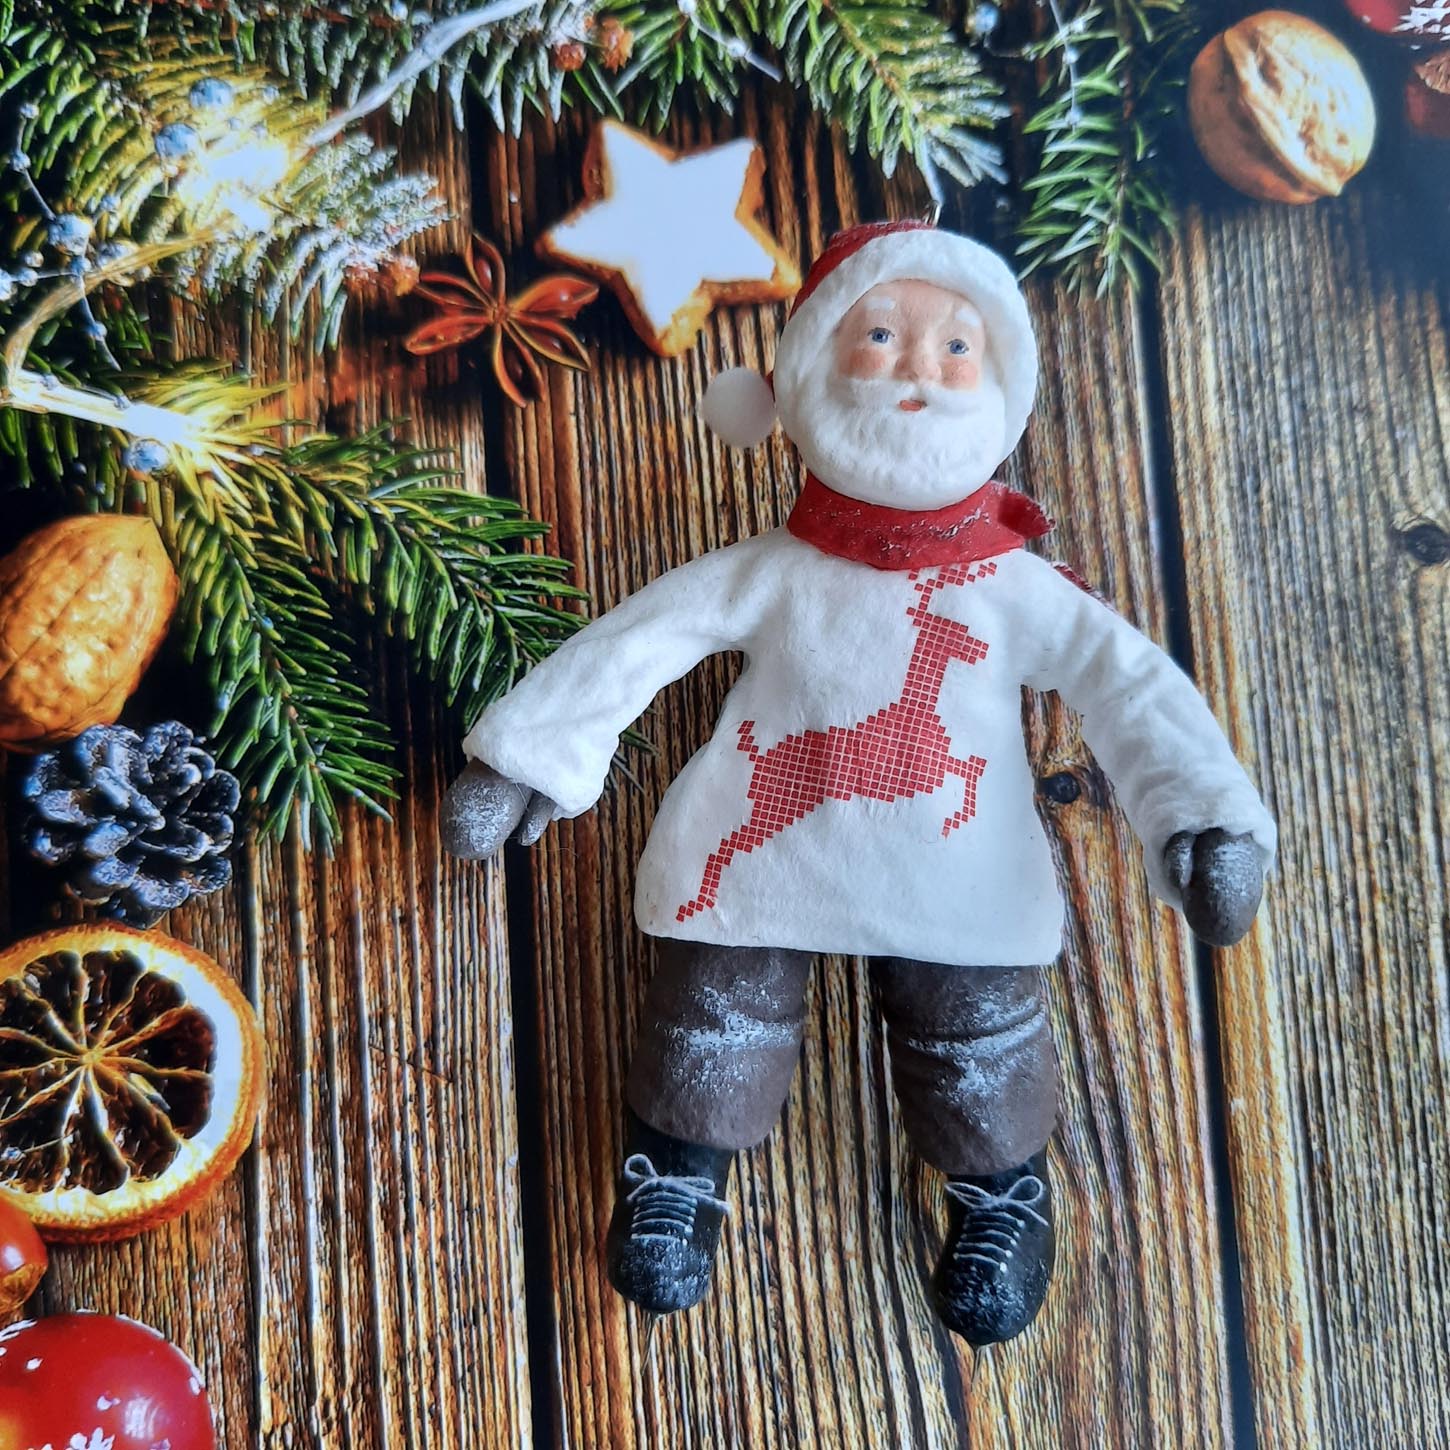 Дед мороз спешит
  на елку
  
  
  Материалы: вата,
  клейстер, акриловые краски, полимерная глина.
  Размер игрушки:
  11,5  см.